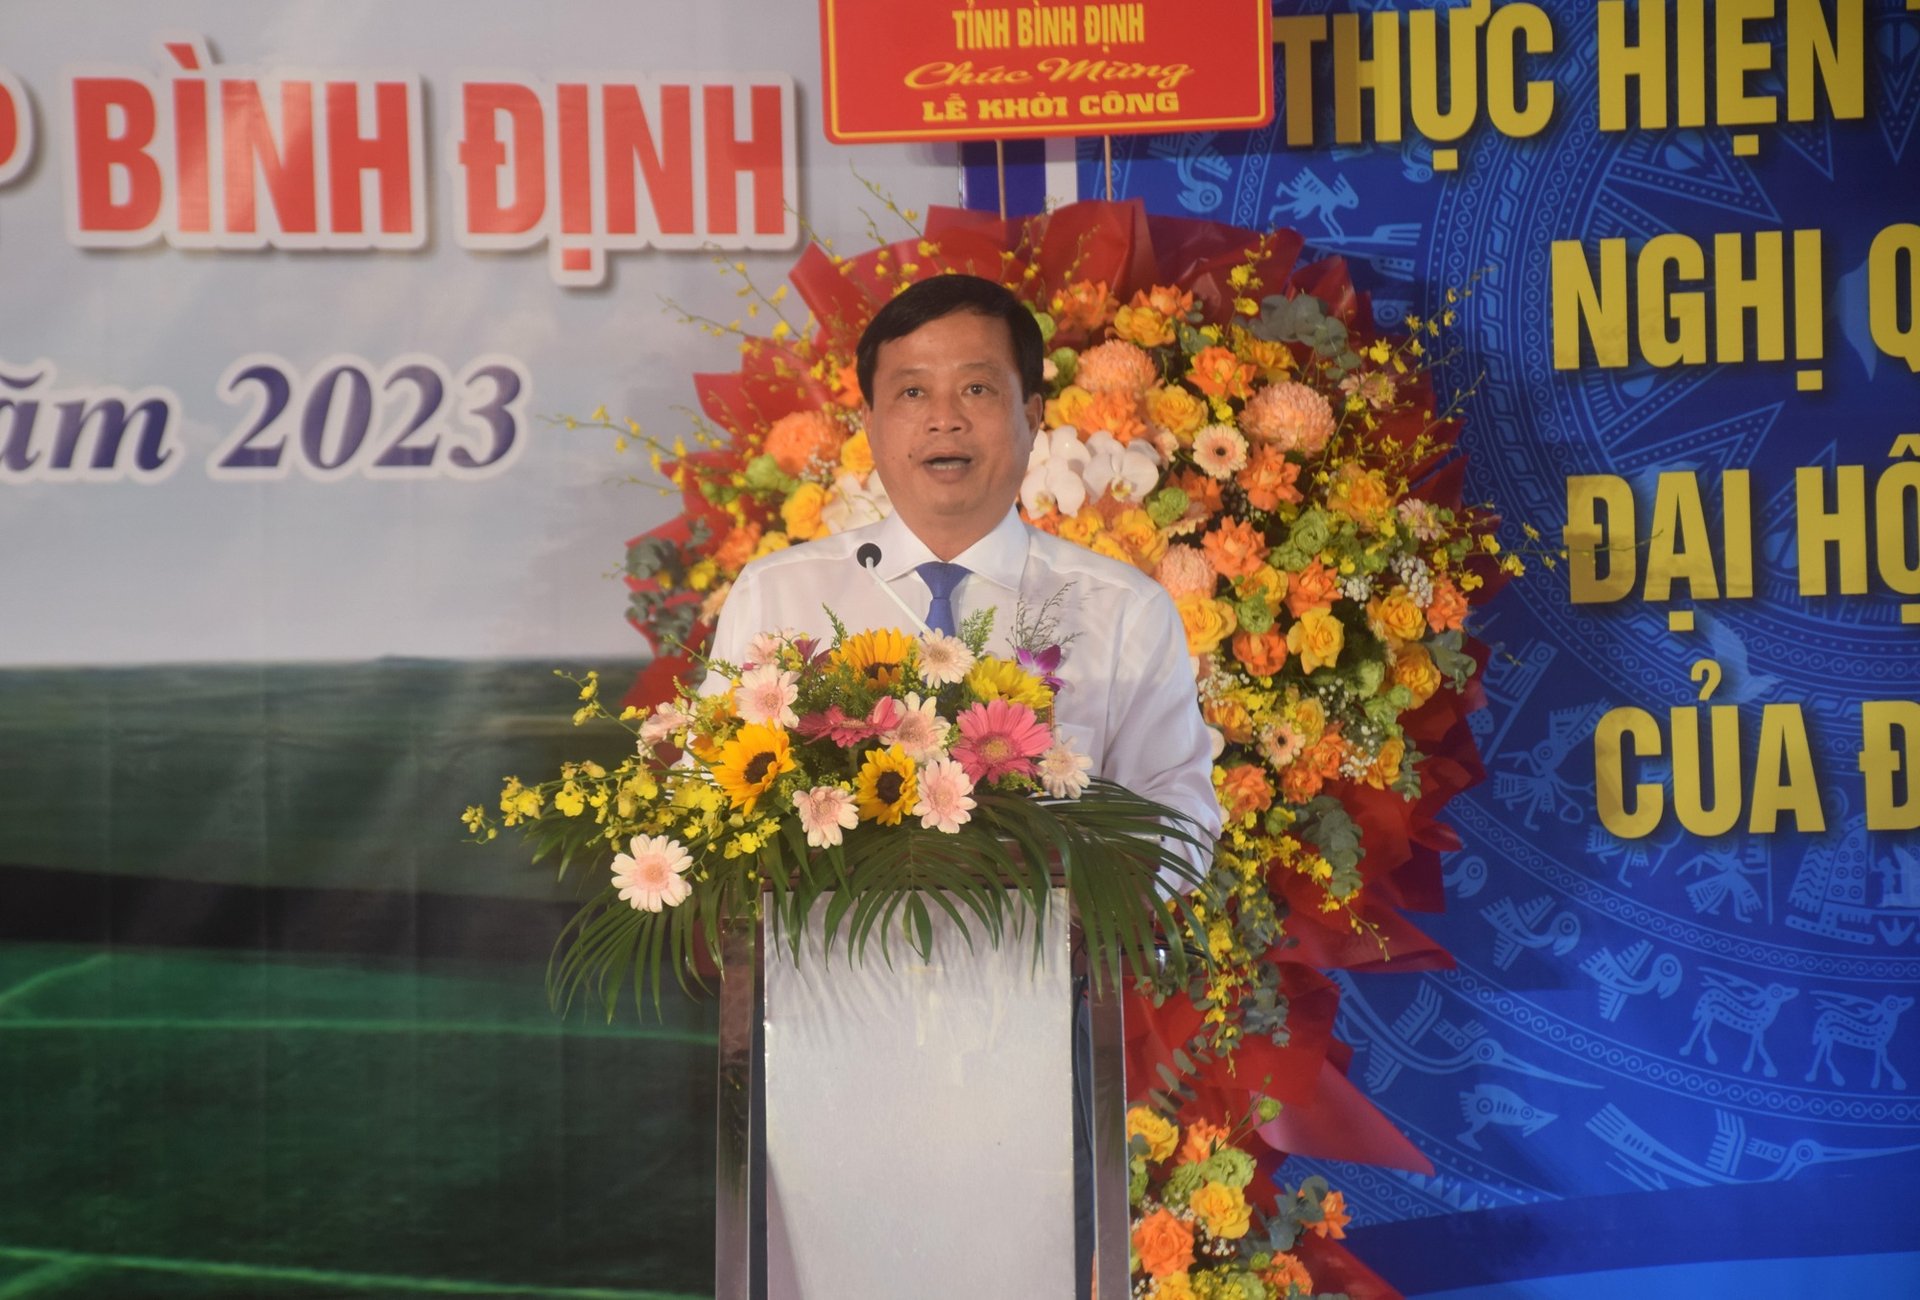 Ông Nguyễn Tuấn Thanh, Phó Chủ tịch Thường trực UBND tỉnh Bình Định, phát biểu tại buổi lễ. Ảnh: V.Đ.T.